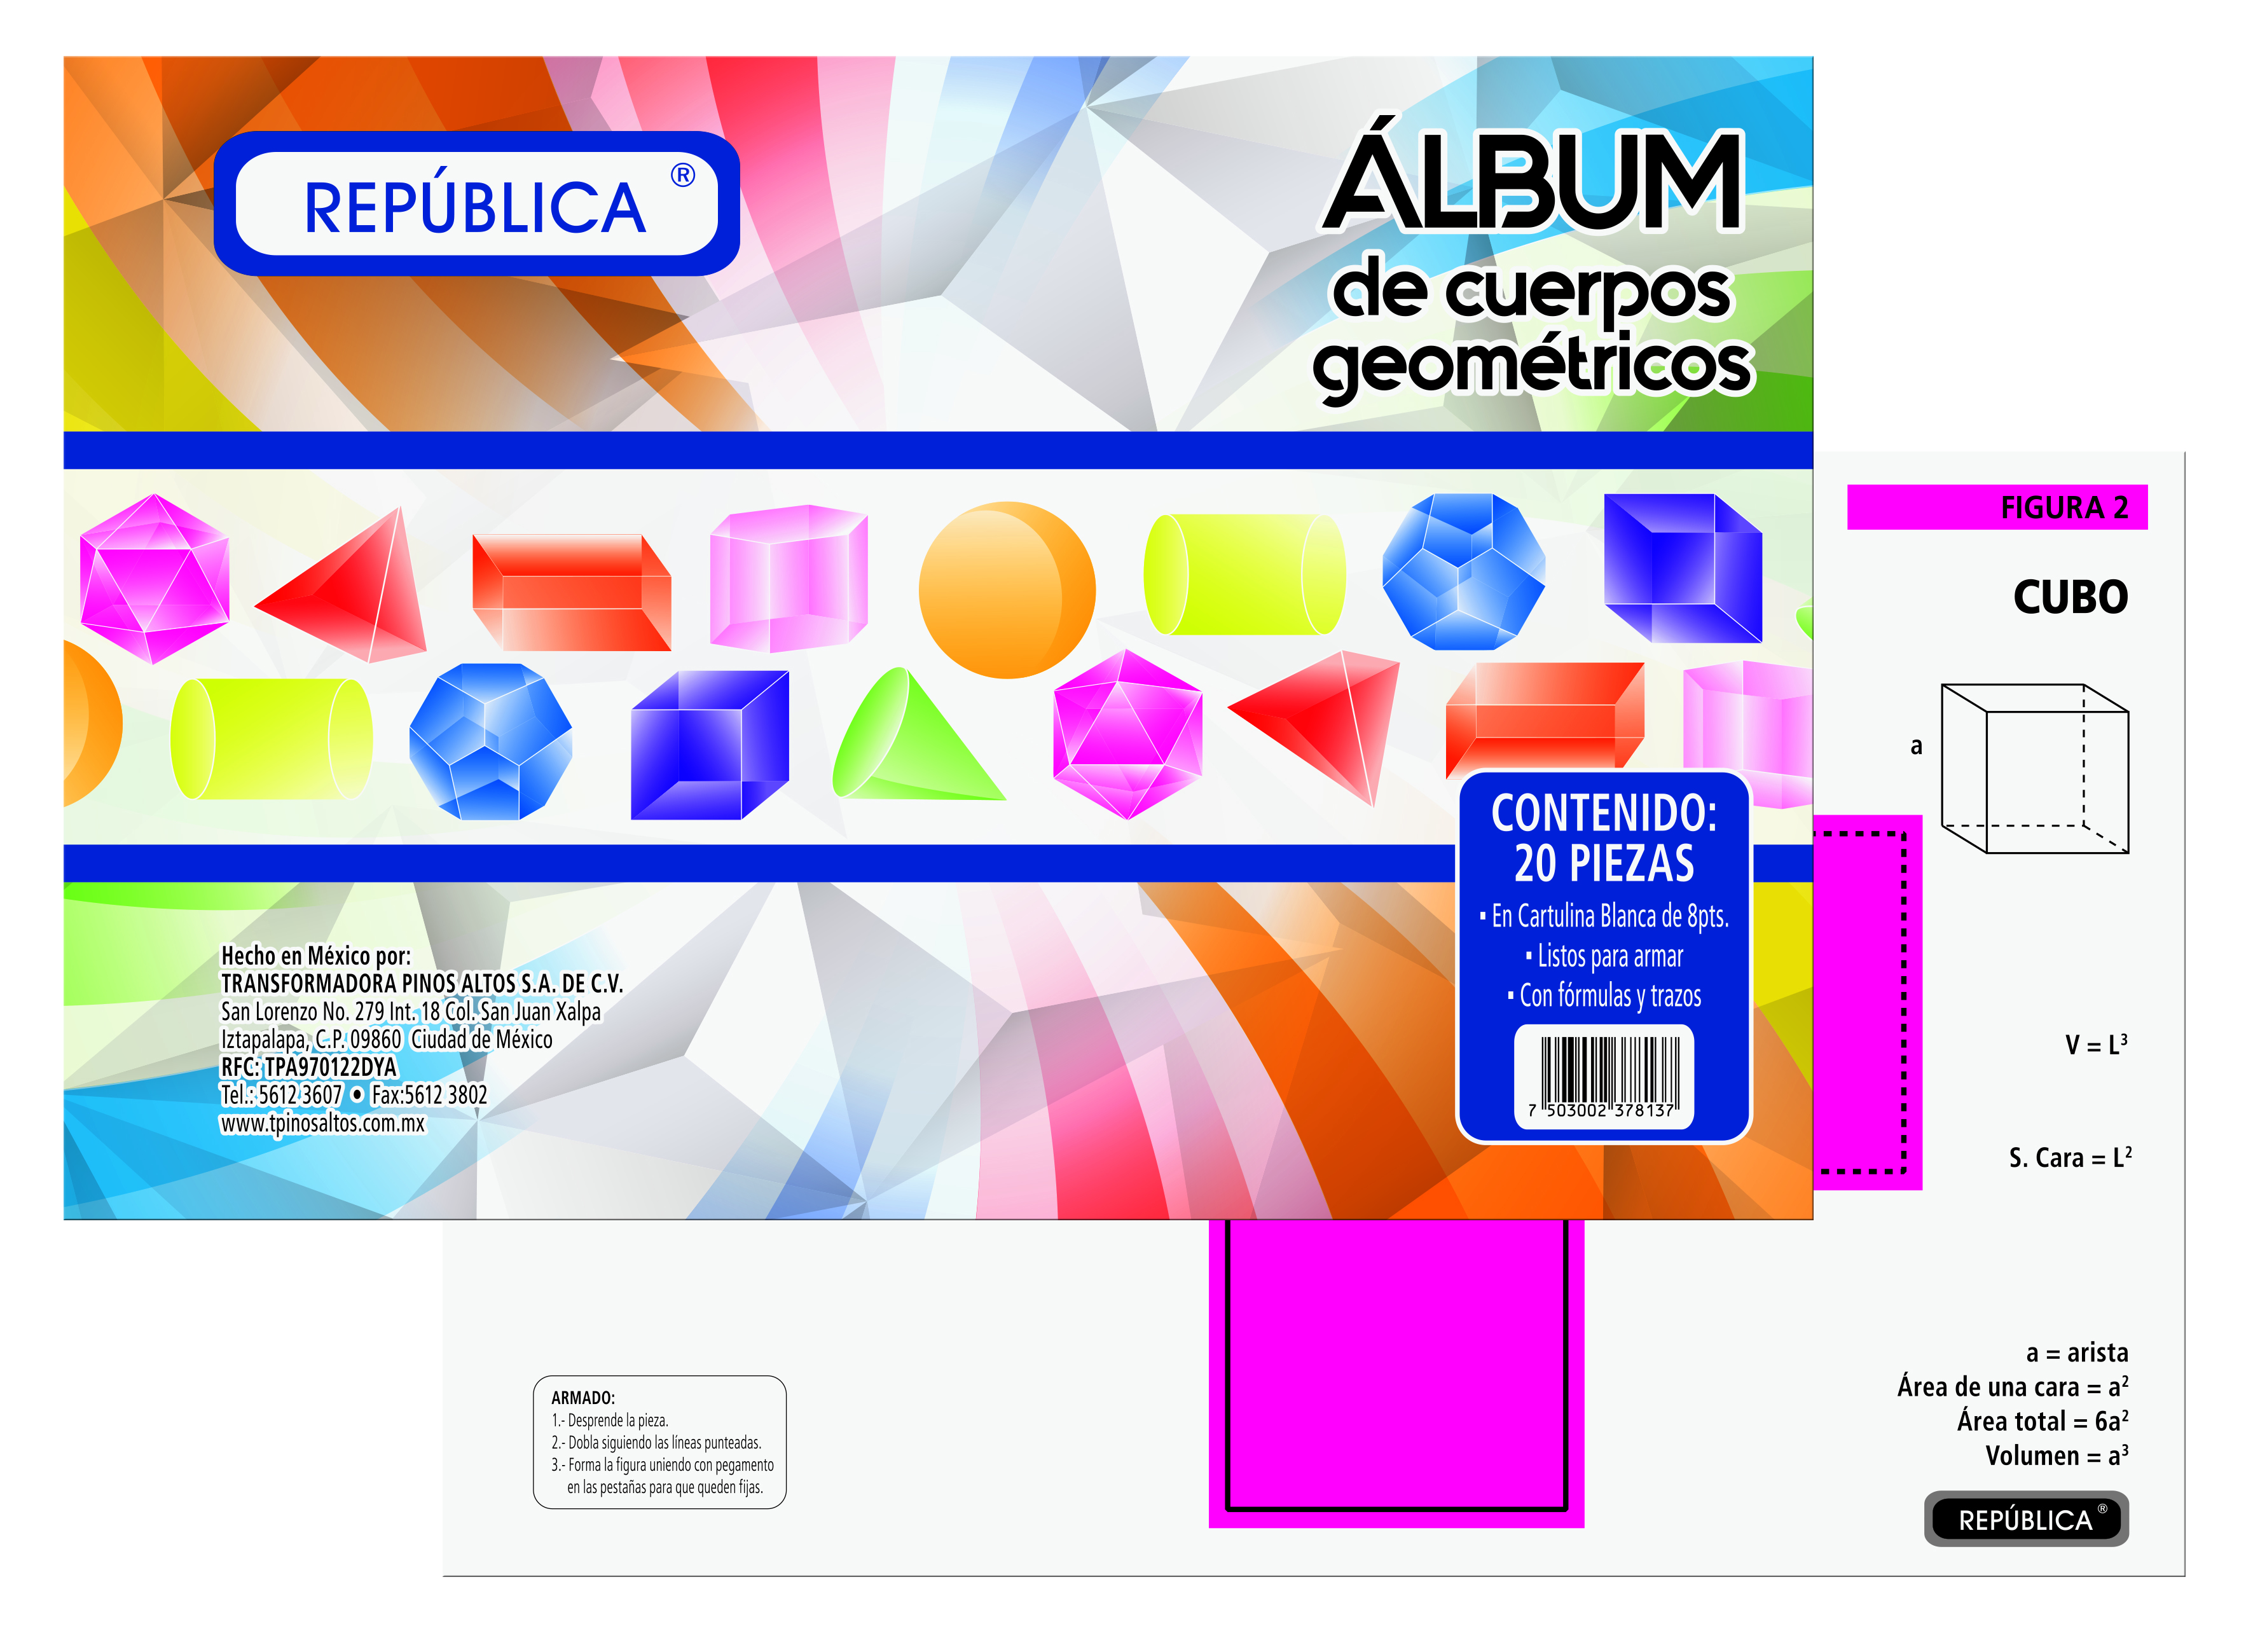 ALBUM DE CUERPO GEOMETRICO     REPUBLICA 378137 378132 GEO01